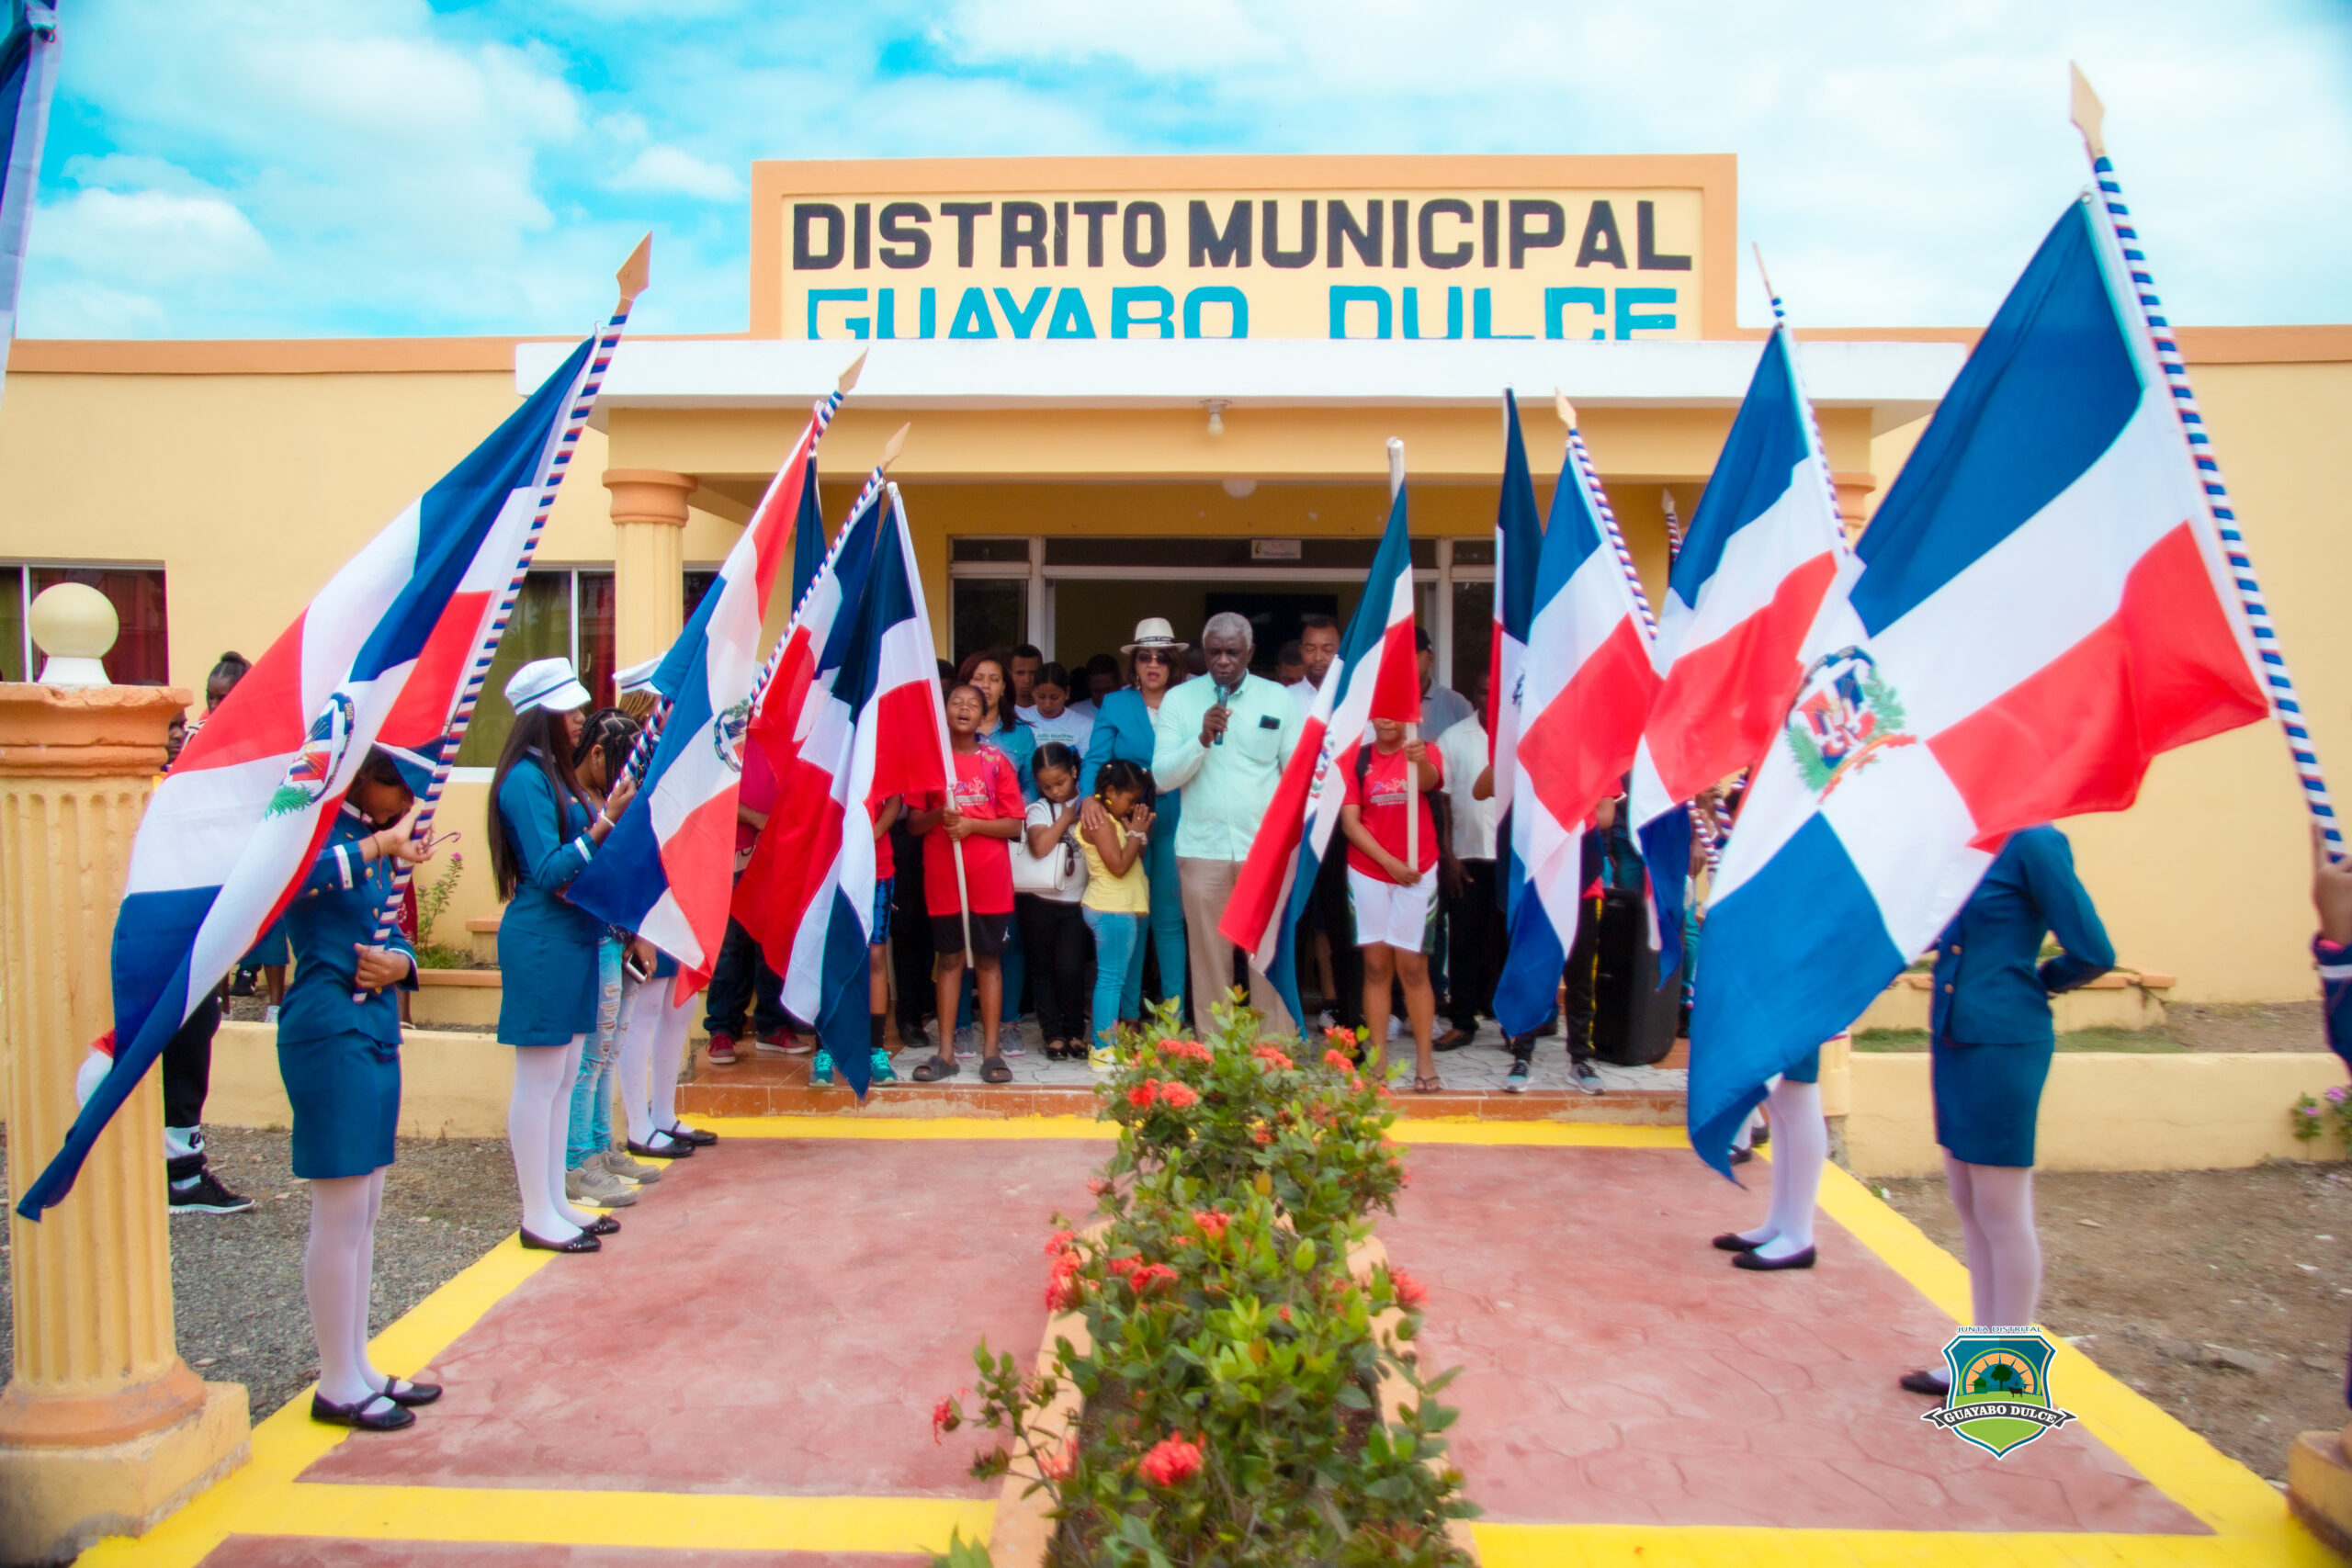 Ayuntamiento deja iniciado el Primer Festival Deportivo Semana Santa Guayabo Dulce 2022